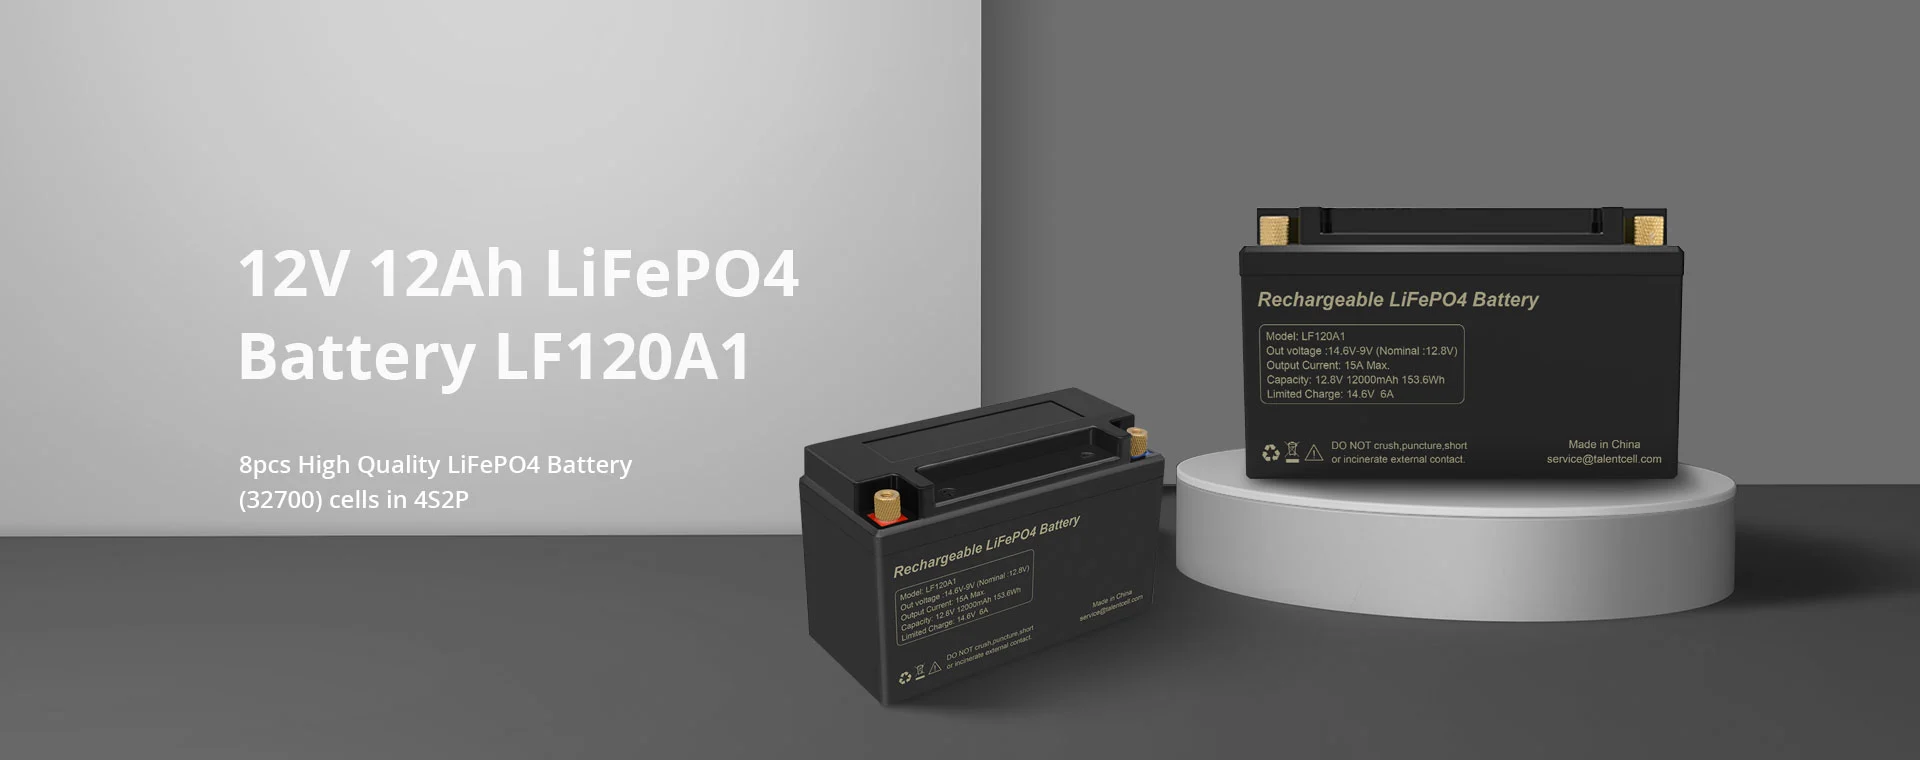 12V 12Ah LiFePO4 Battery